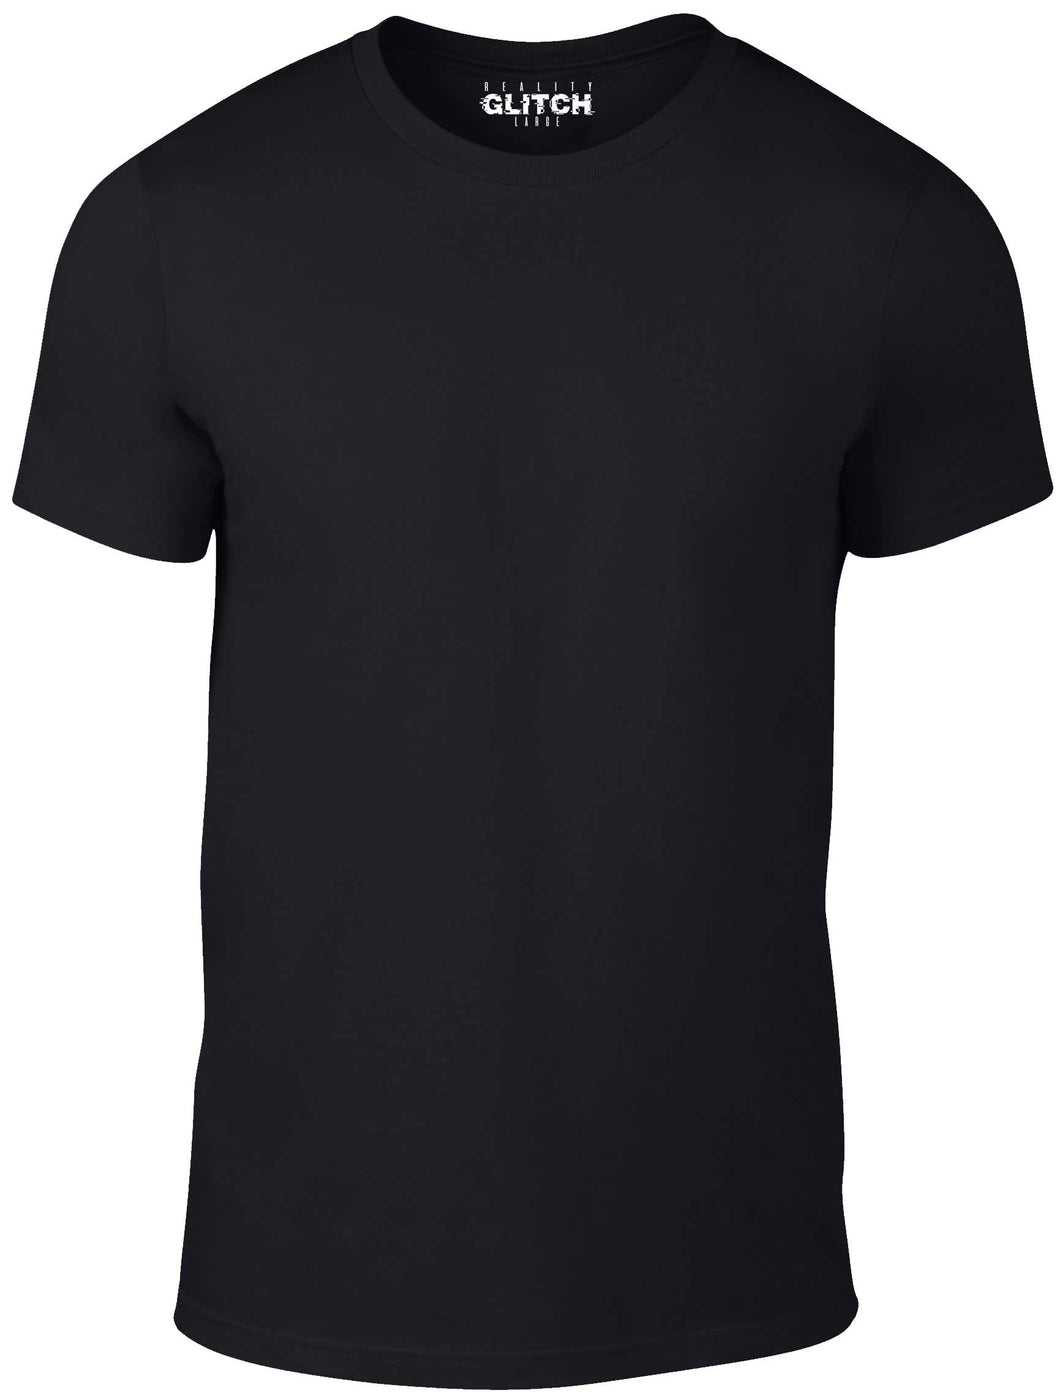 Men's Custom Printed T-Shirt